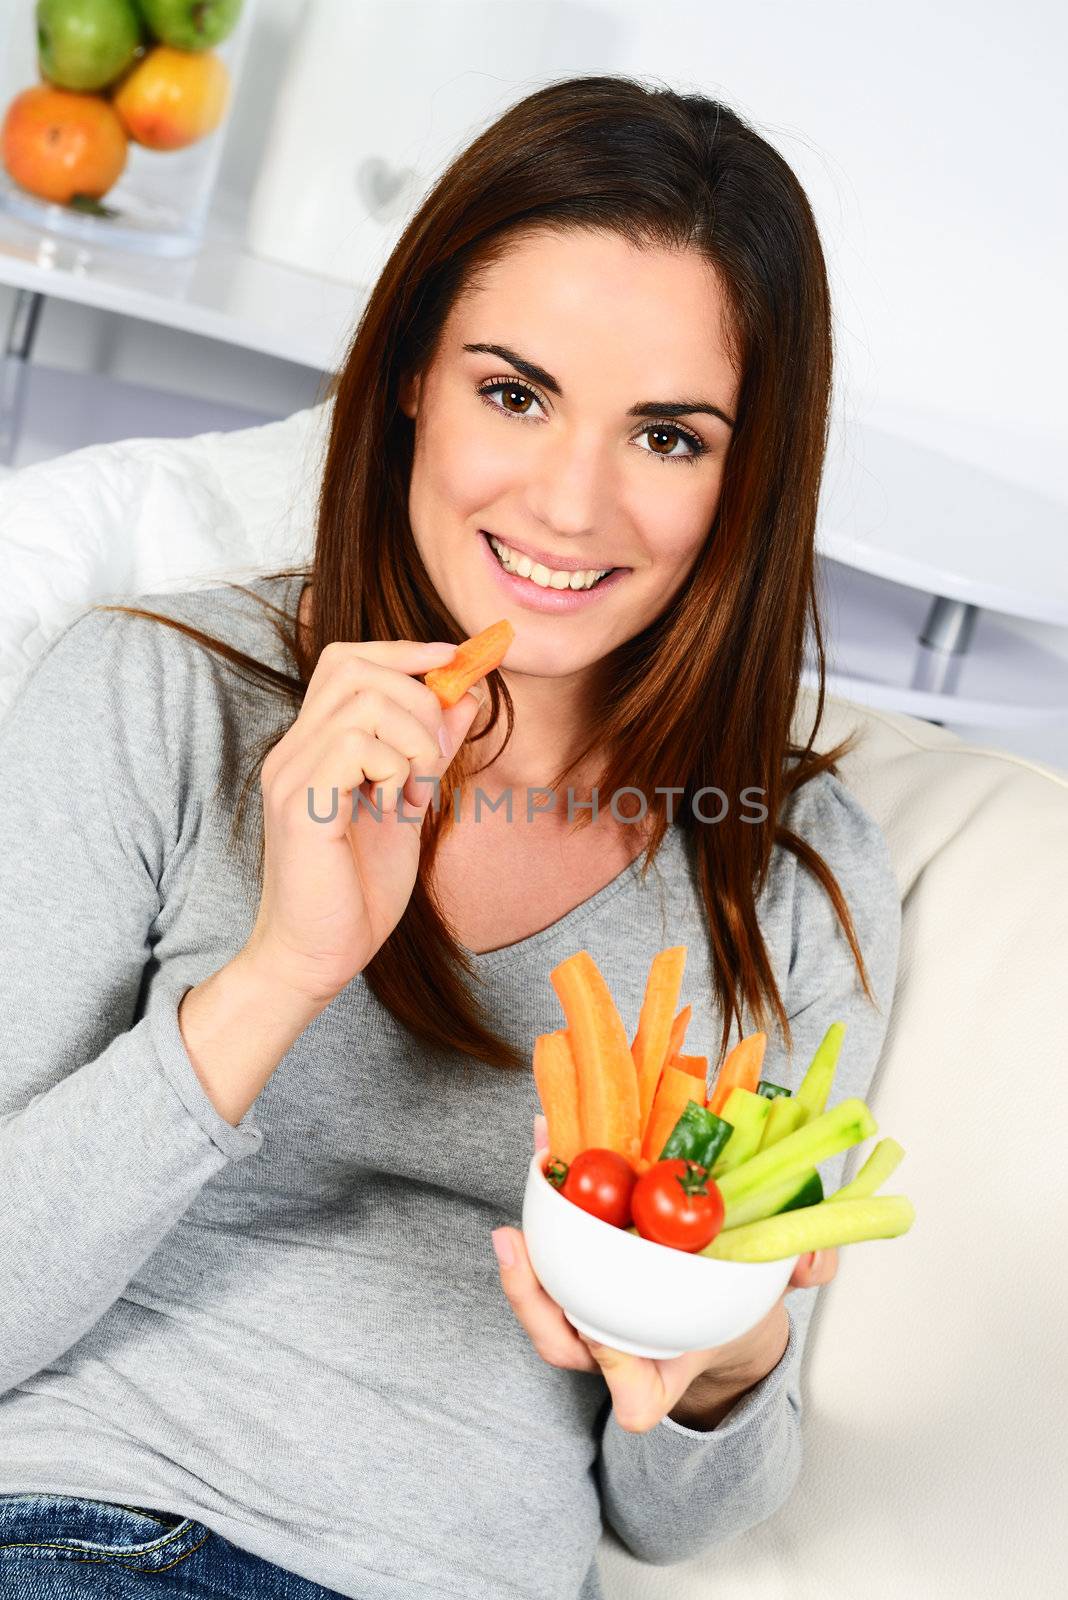 Woman eating salad. by ventdusud